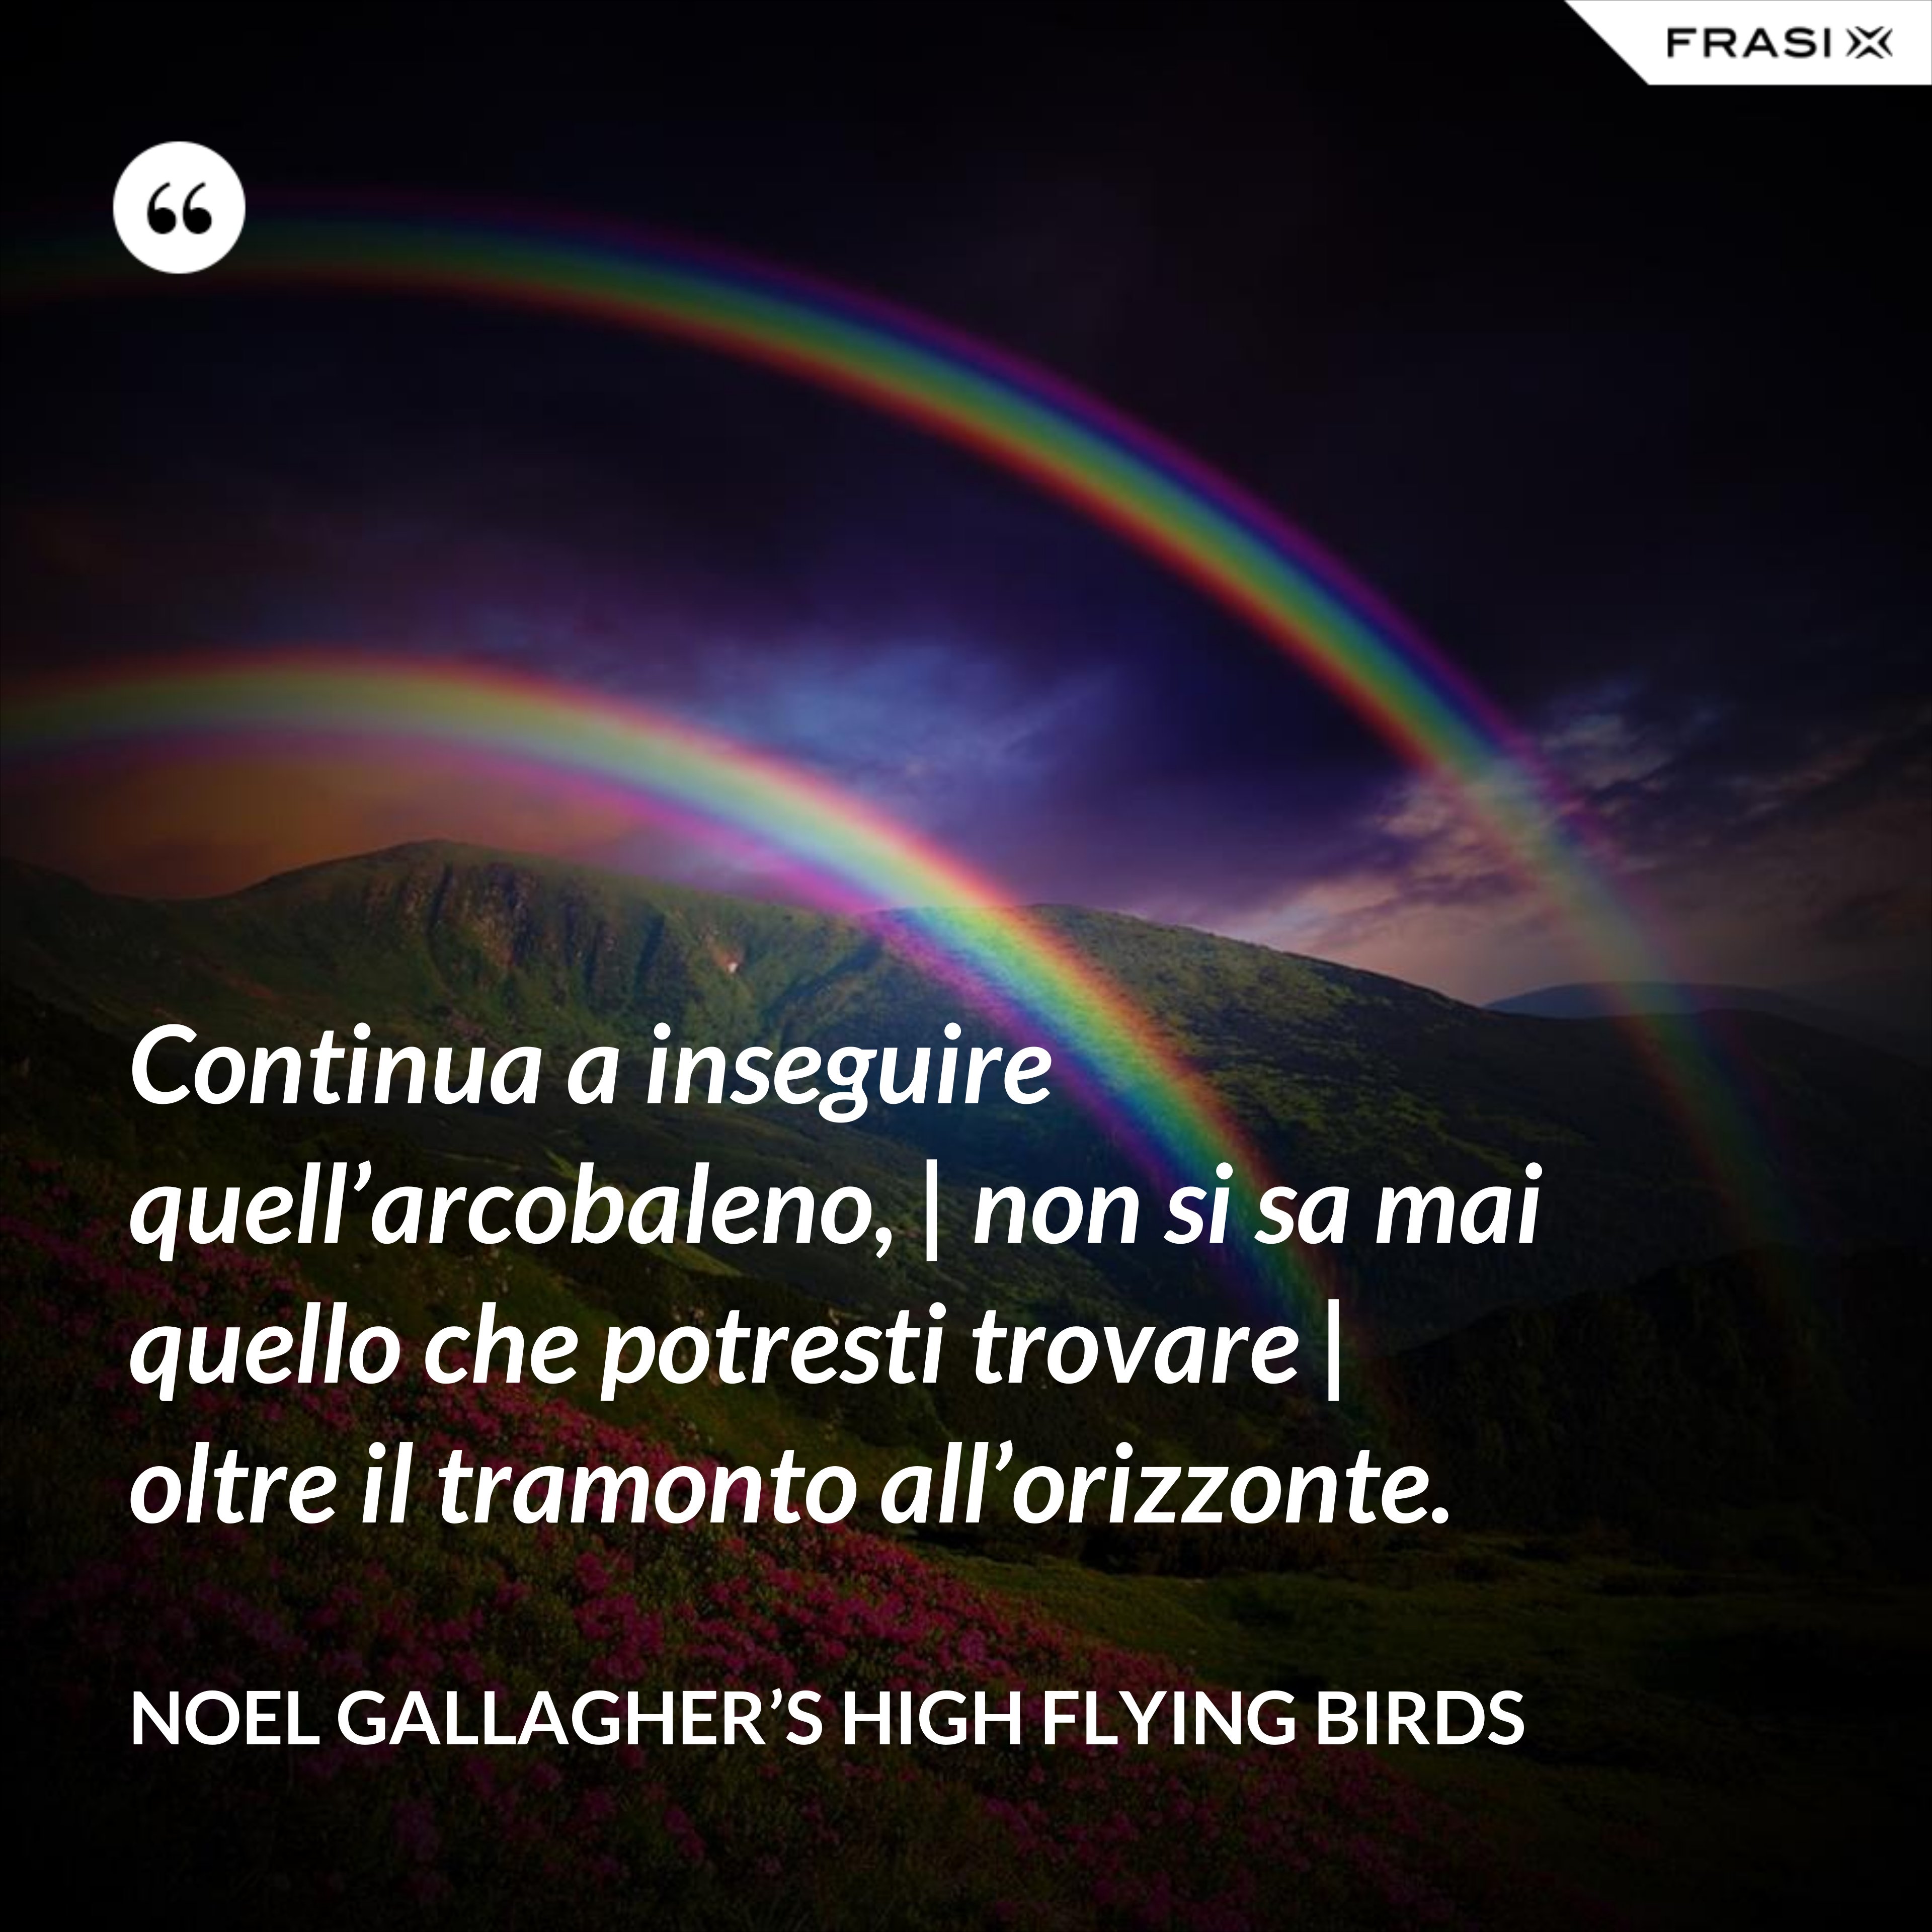 Continua a inseguire quell’arcobaleno, | non si sa mai quello che potresti trovare | oltre il tramonto all’orizzonte. - Noel Gallagher’s High Flying Birds